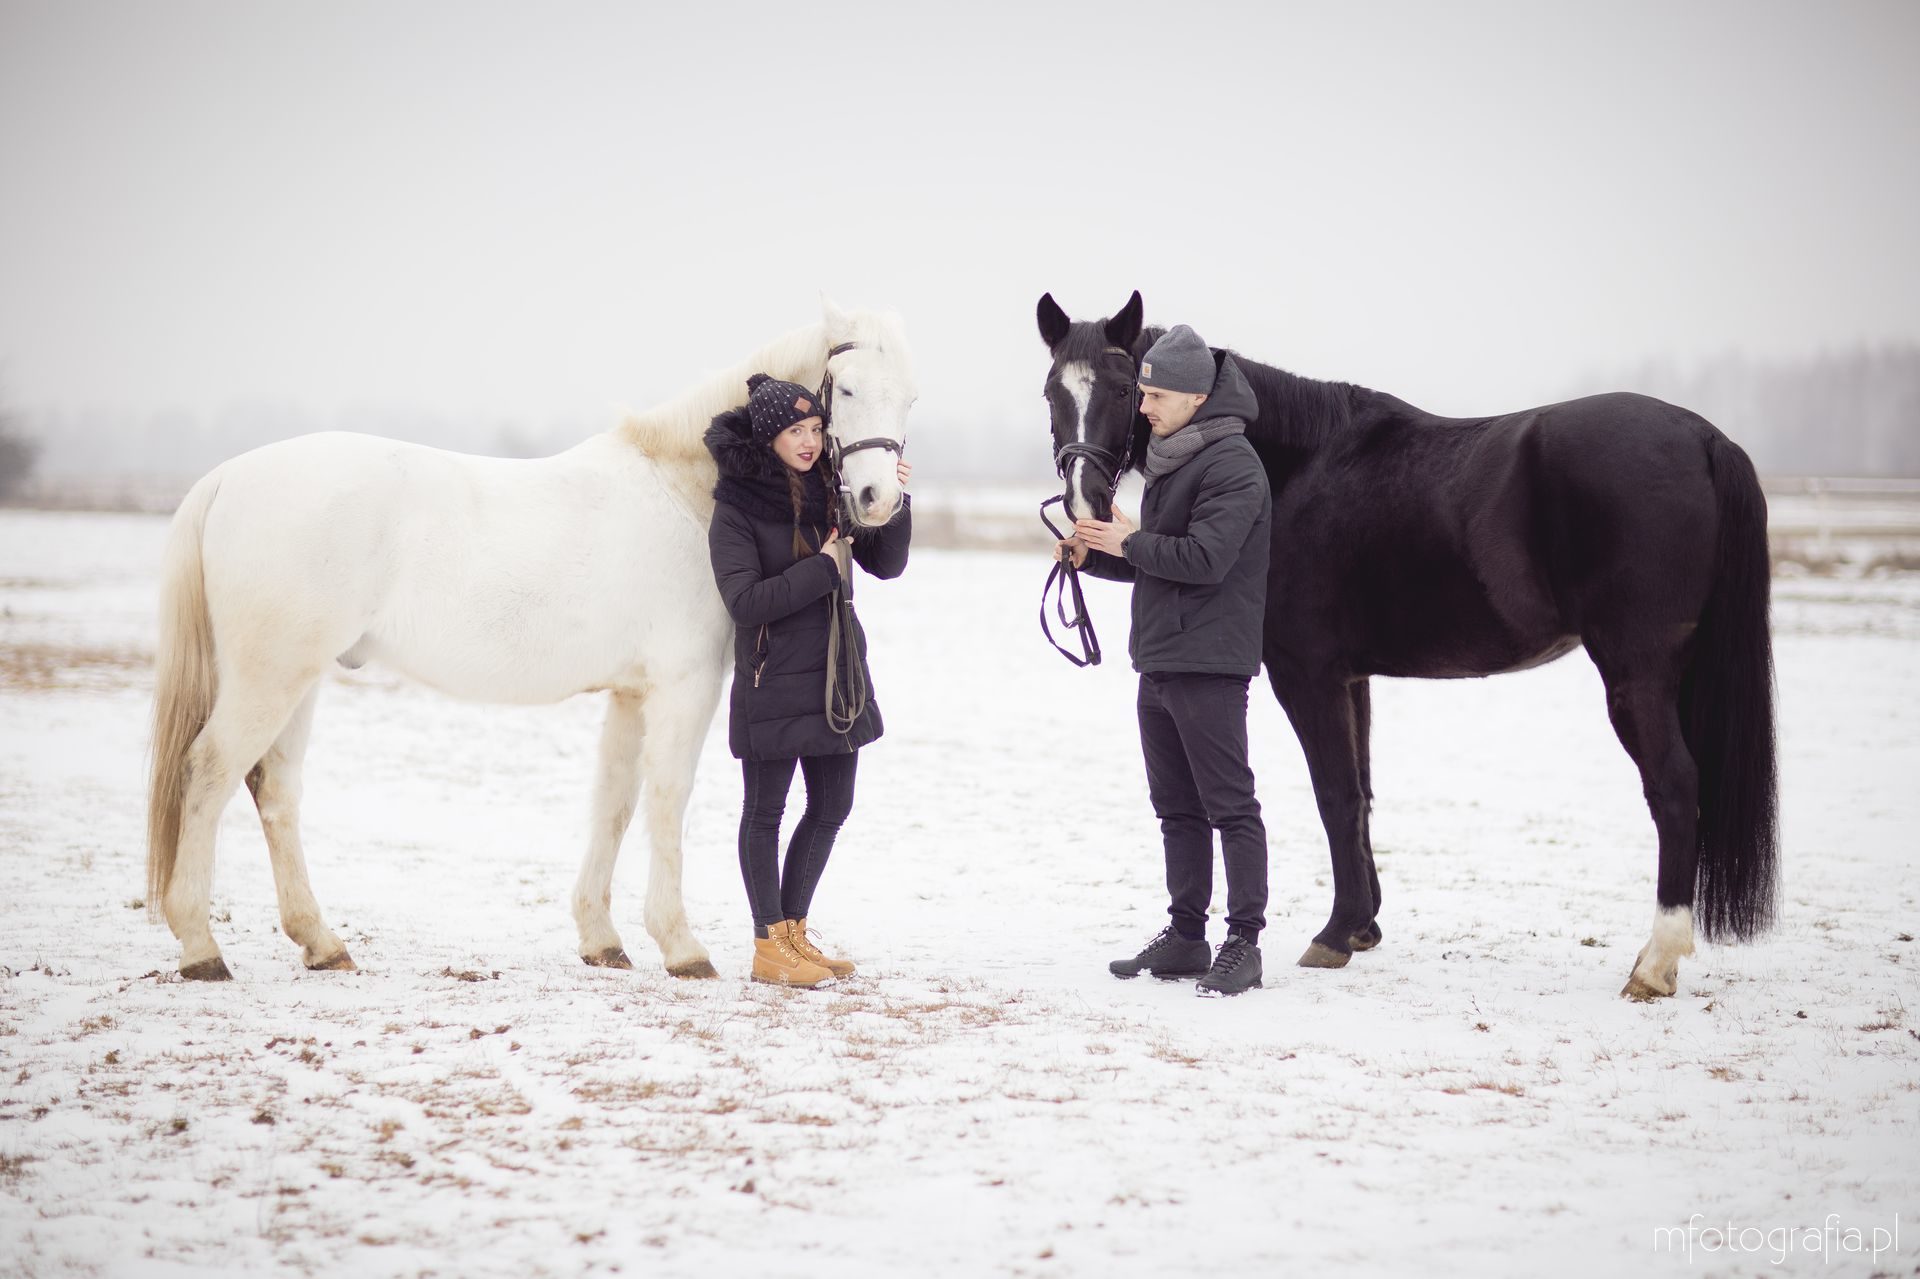 zimowe zdjęcia pary zimą z końmi